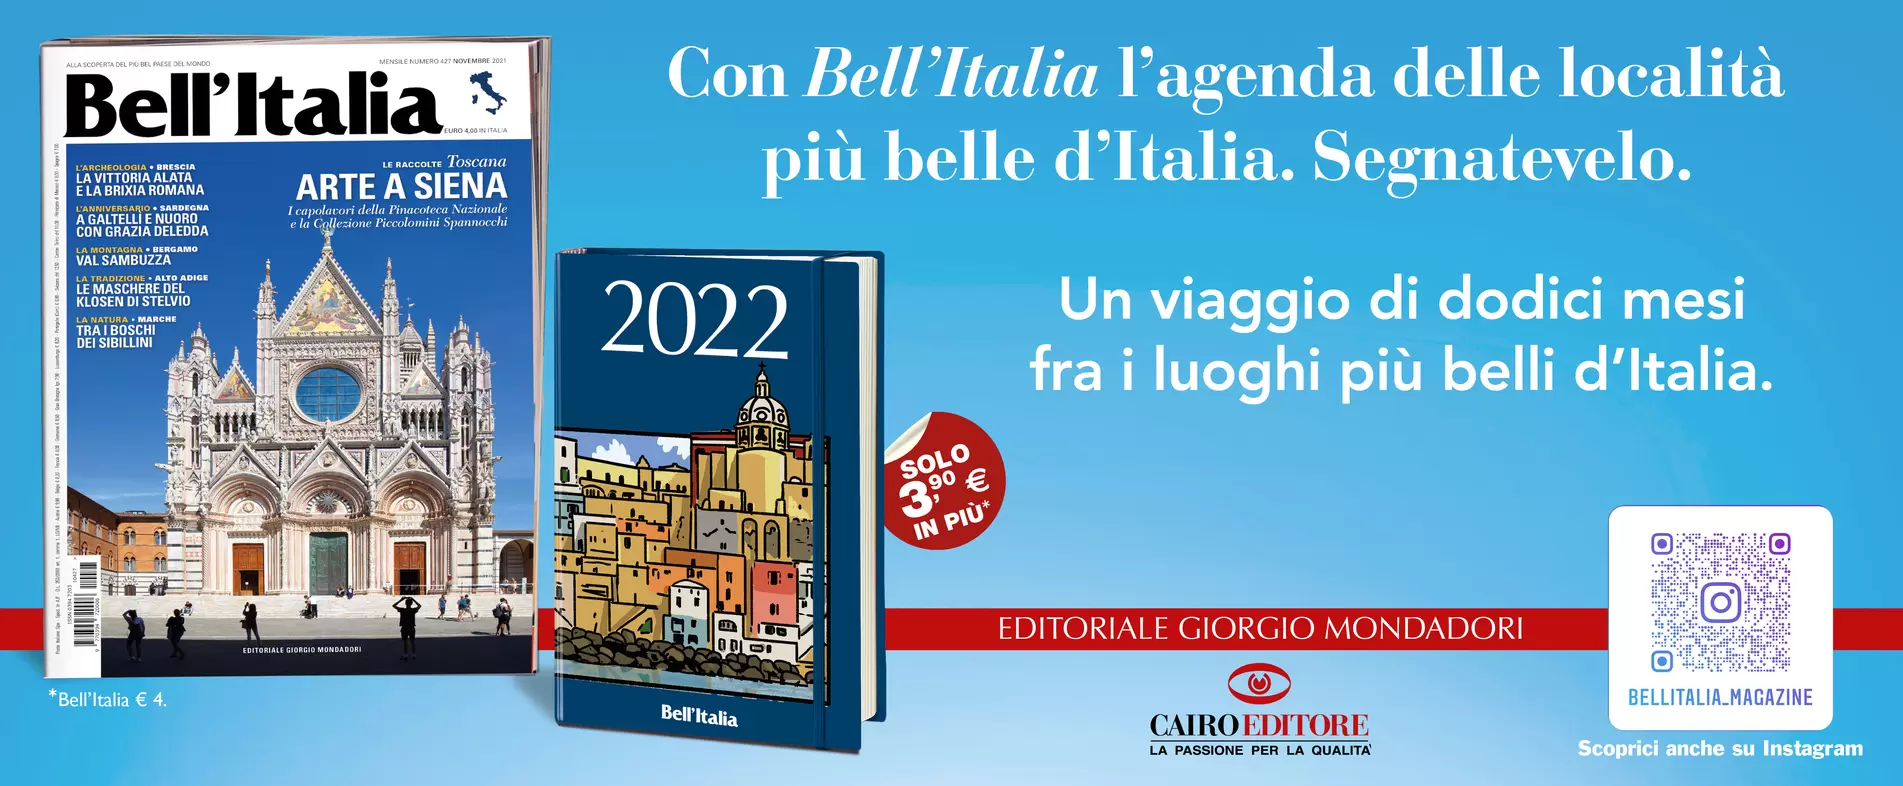 Con Bell’Italia l’agenda delle località più belle d’Italia. Segnatevelo.